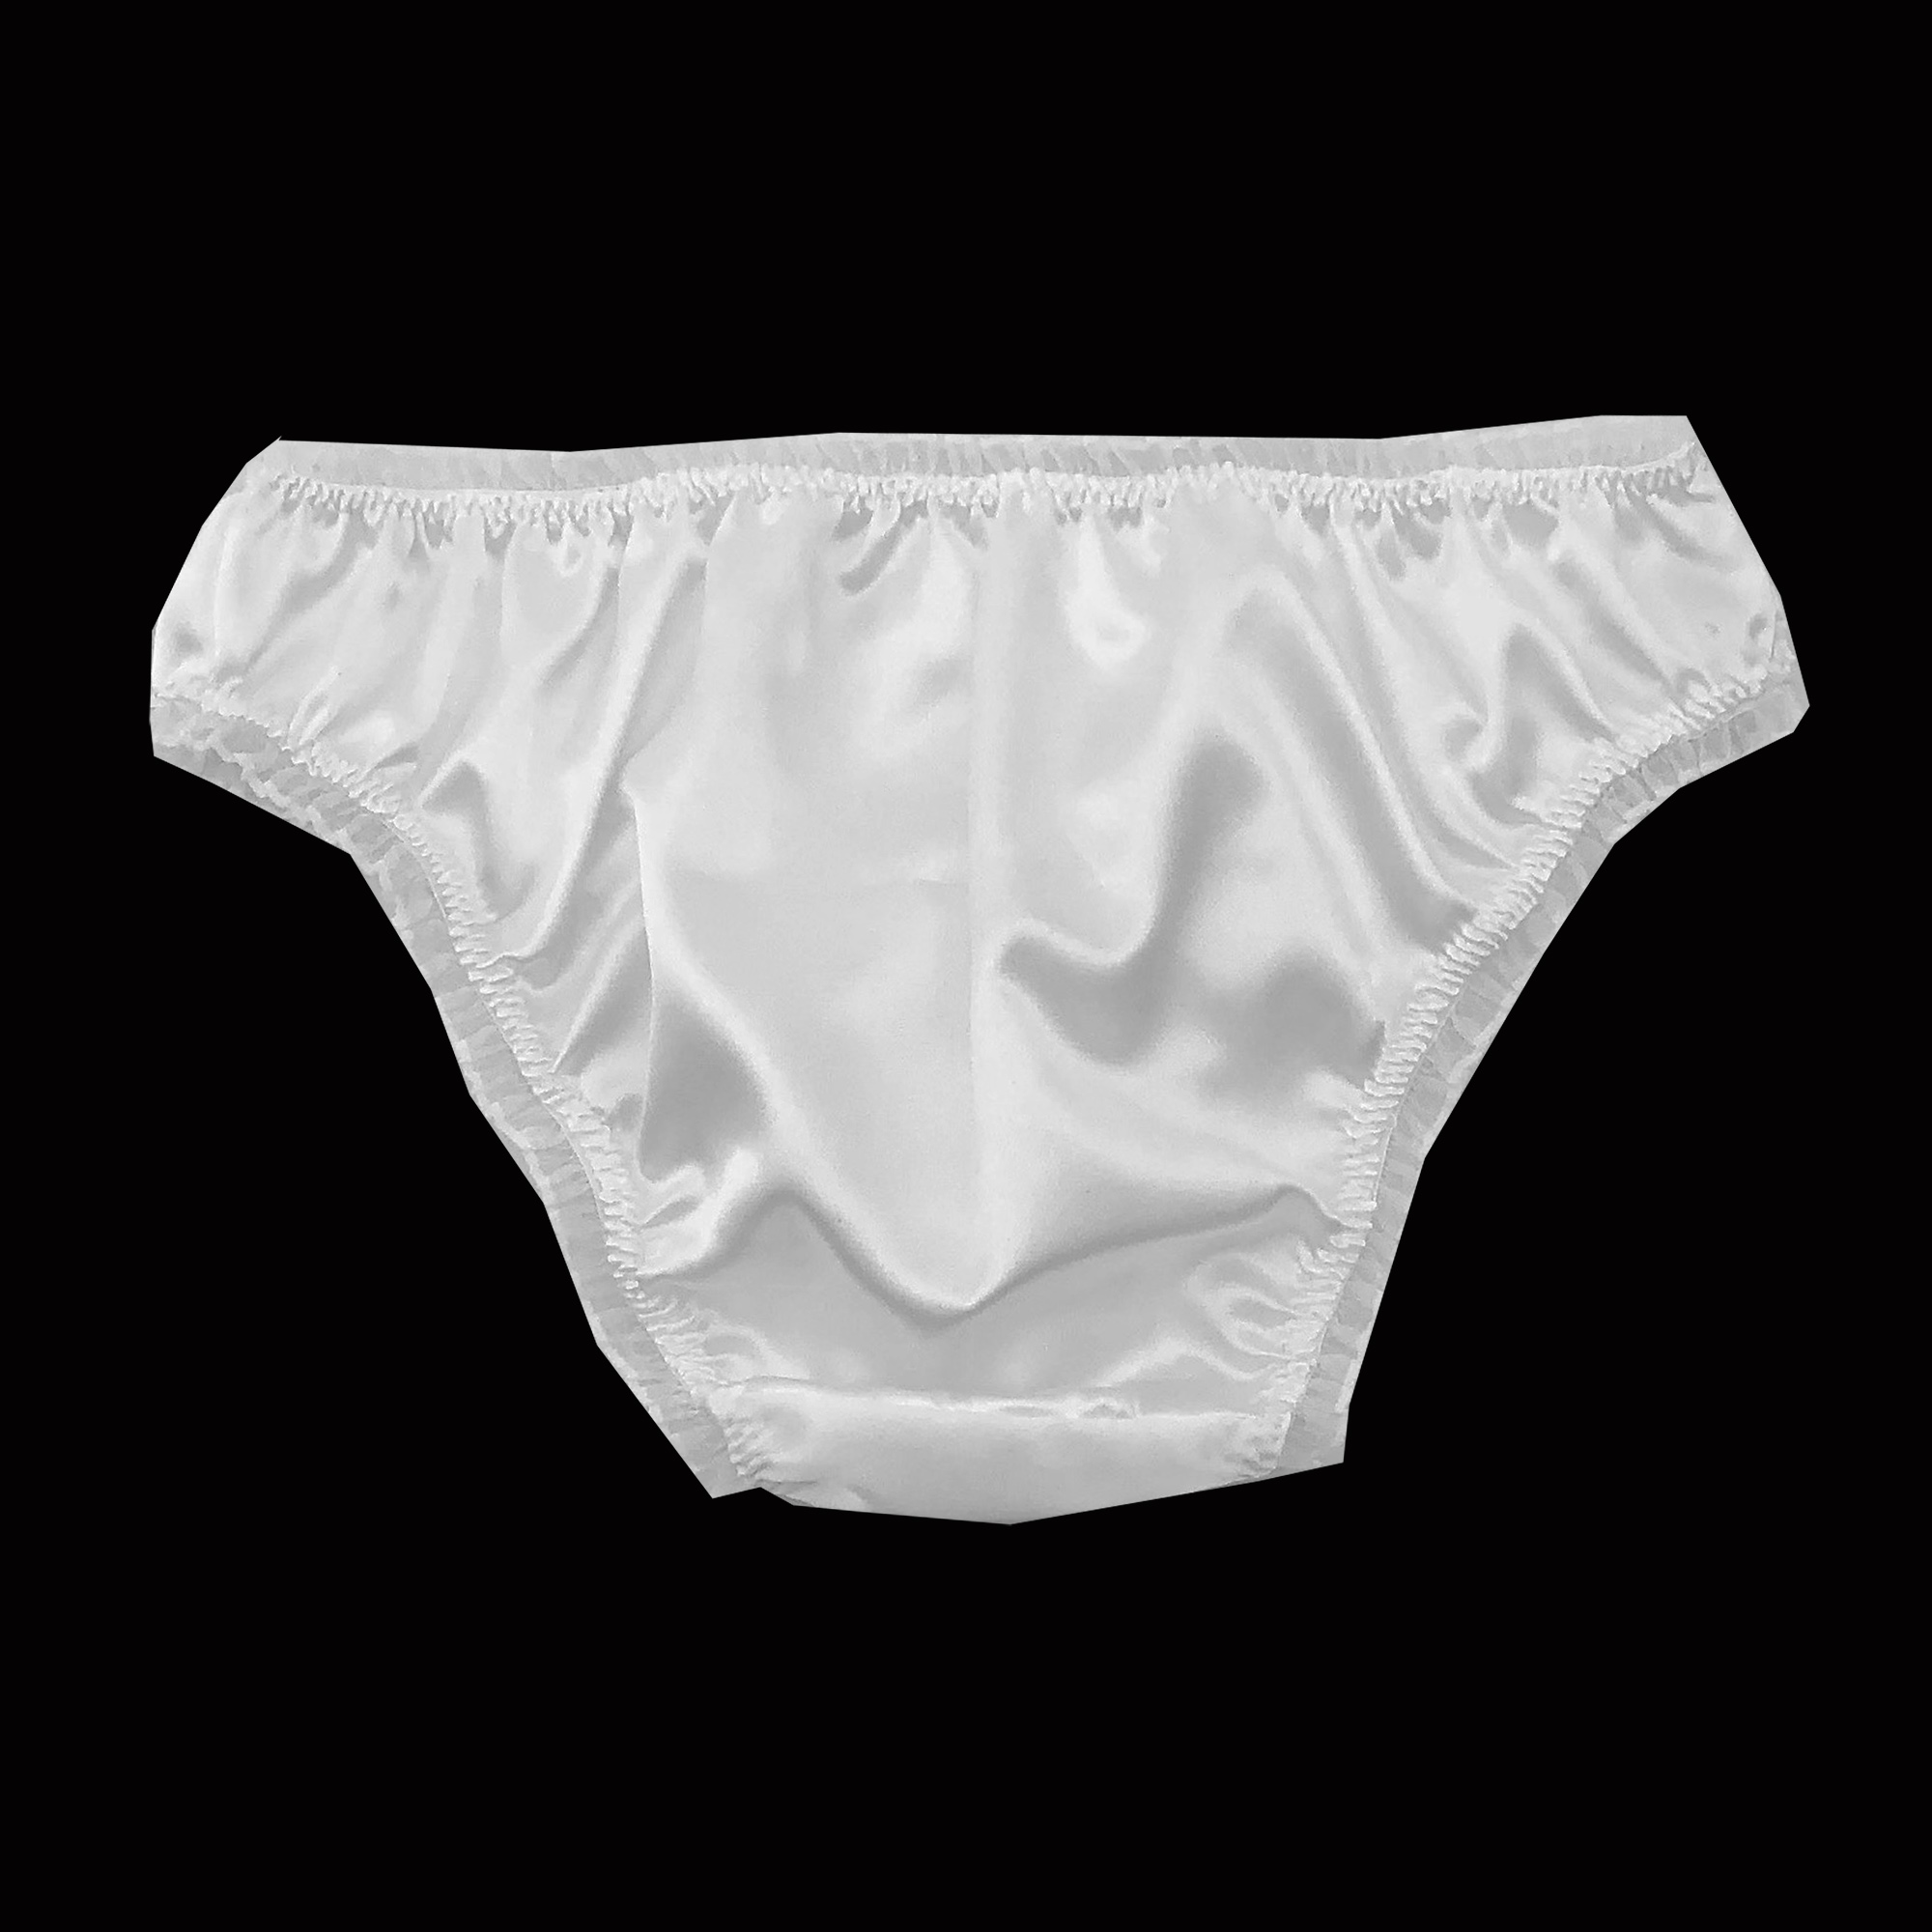 White Satin Frilly Sissy Panties Bikini Knicker Underwear Briefs Size Ebay